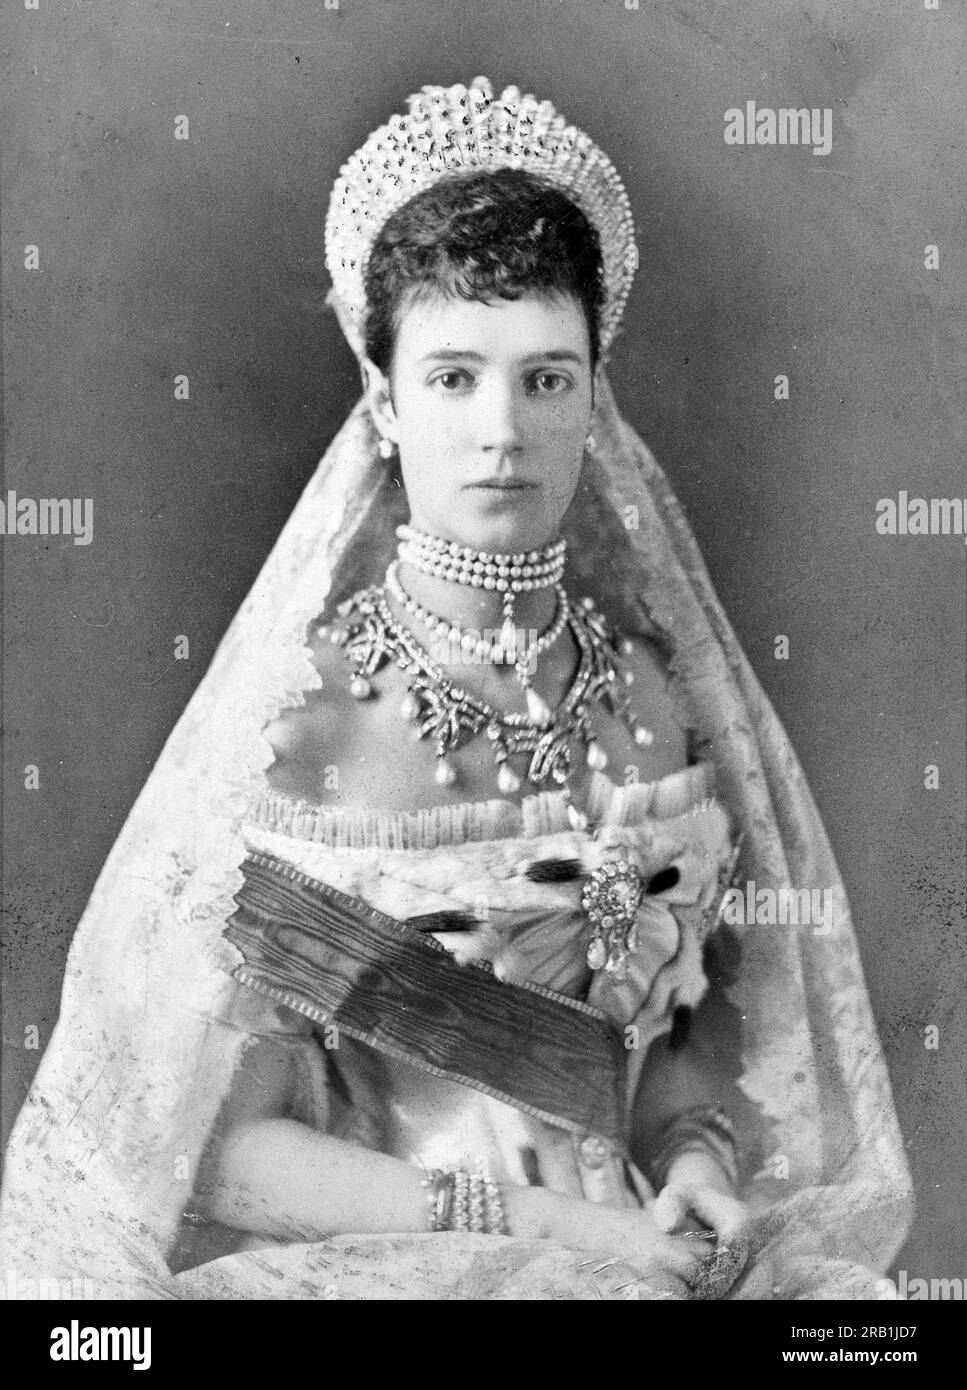 La emperatriz María Feodorovna, María Feodorovna, María Feodorovna, María Feodorovna (1847-1928), princesa Dagmar de Dinamarca, fue emperatriz de Rusia de 1881 a 1894 como esposa del emperador Alejandro III Foto de stock